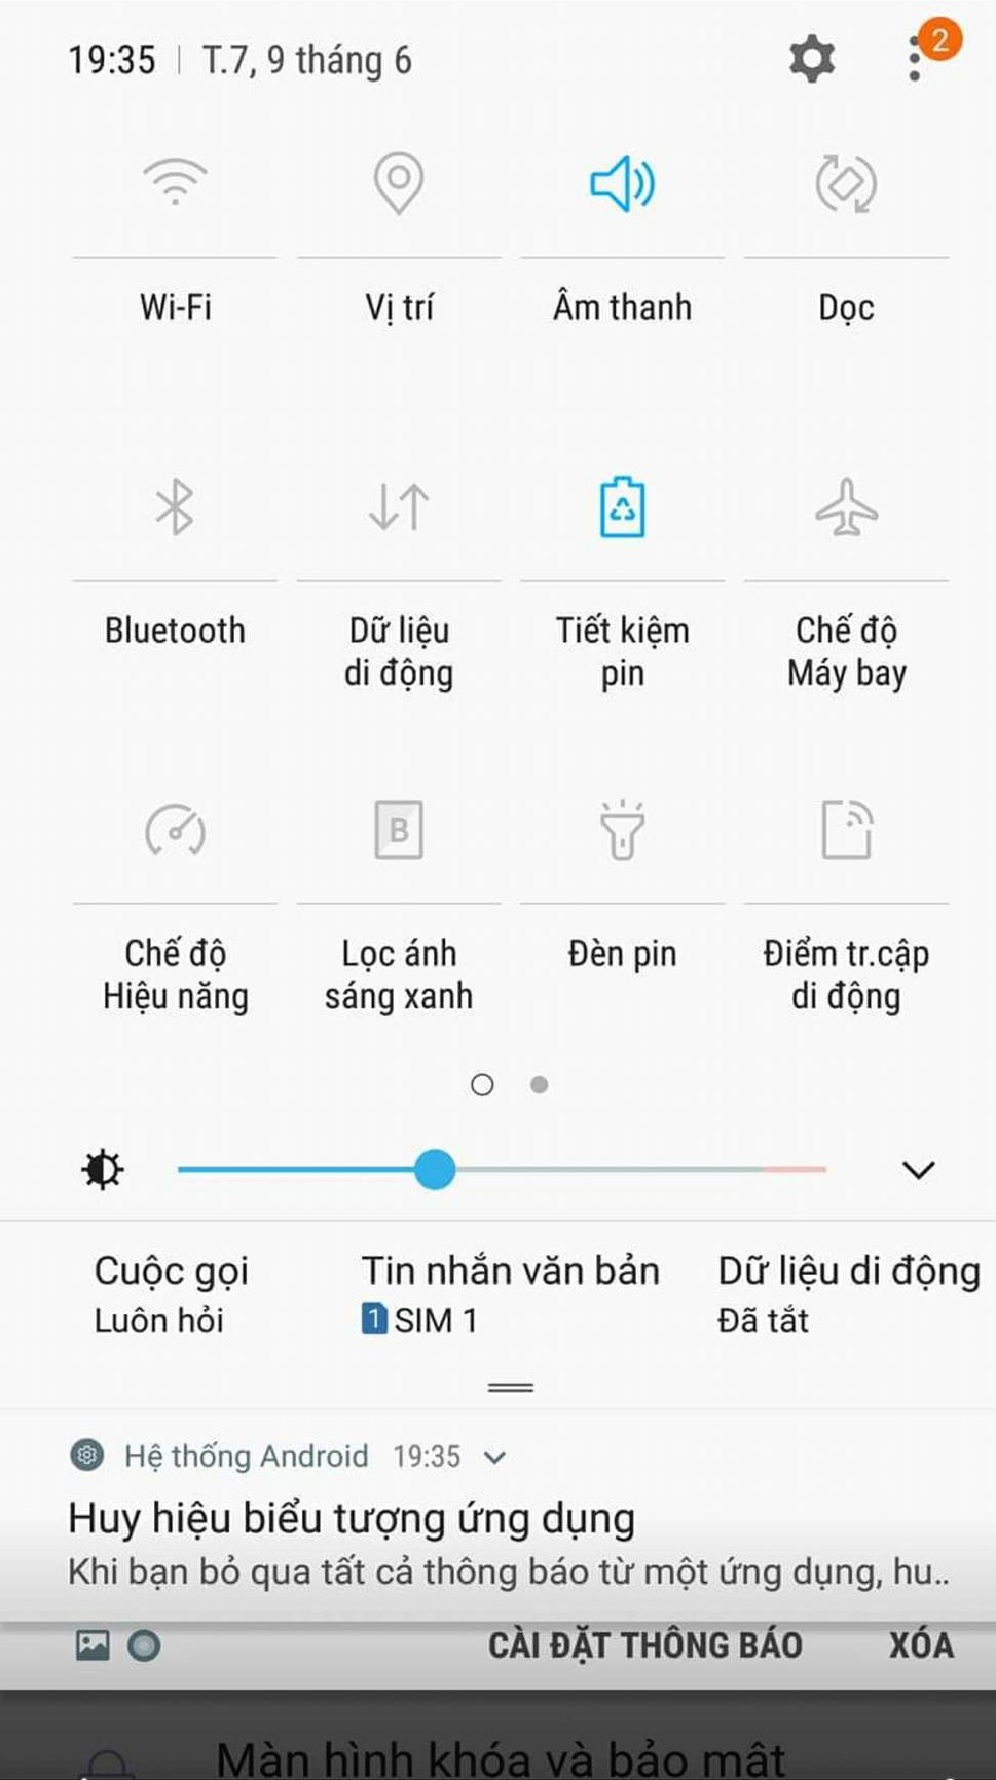 Samsung Galaxy
S7/S7 edge Việt Nam đã nhận bản cập nhật Android 8.0 Oreo